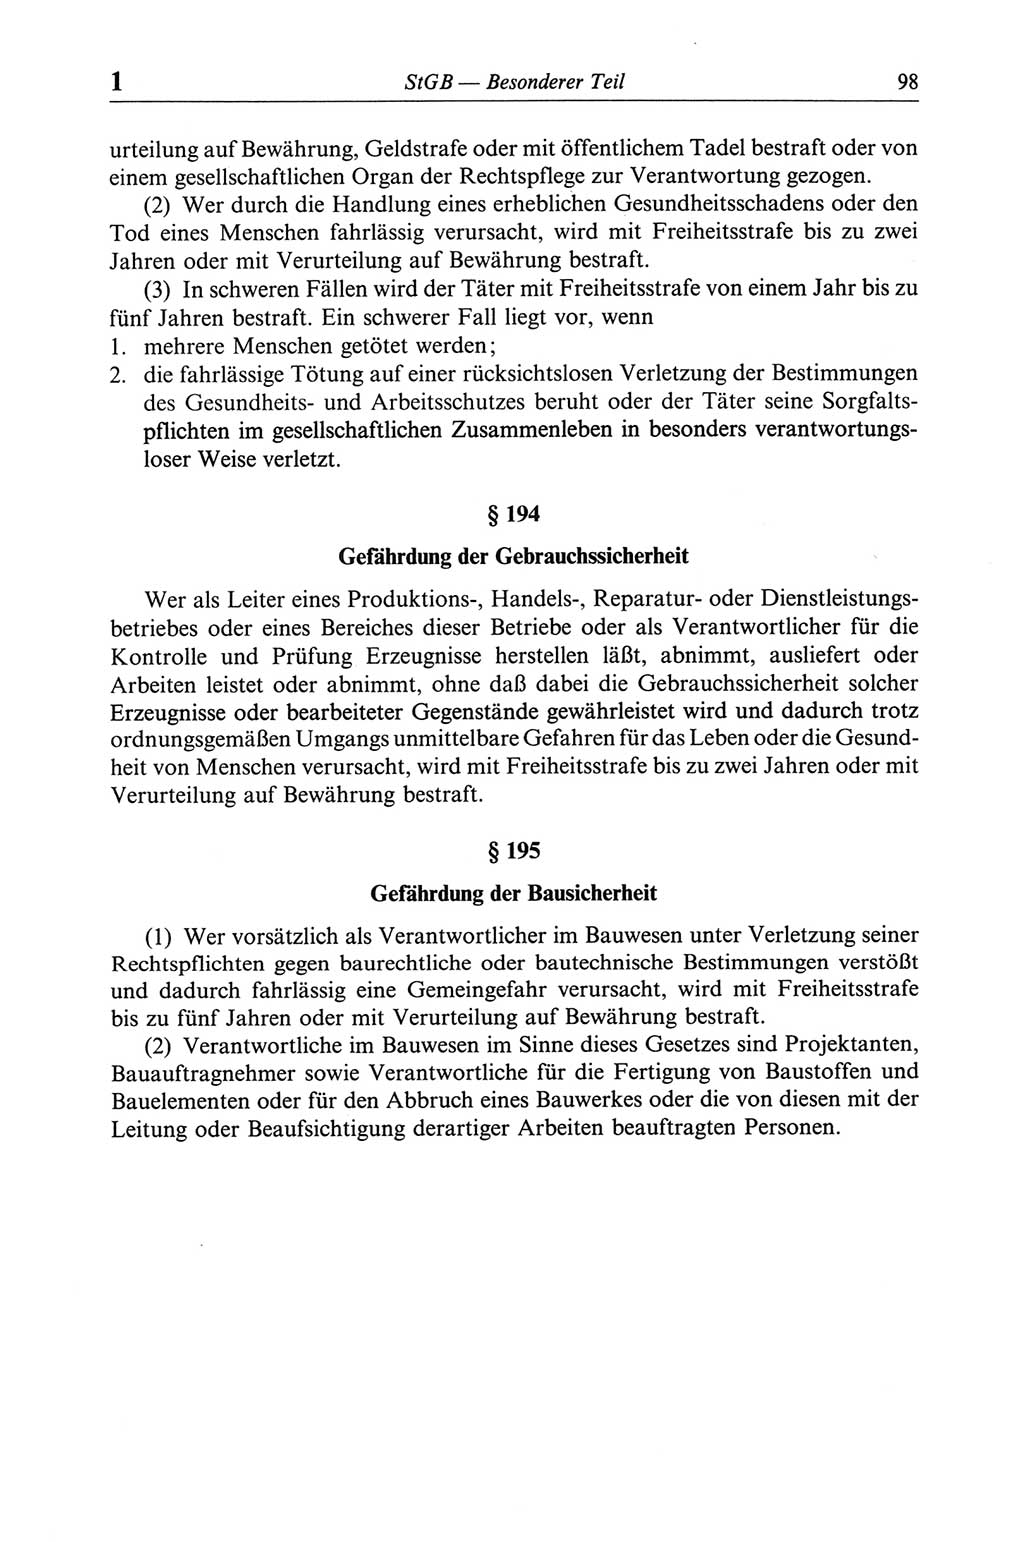 Strafgesetzbuch (StGB) der Deutschen Demokratischen Republik (DDR) und angrenzende Gesetze und Bestimmungen 1968, Seite 98 (StGB Ges. Best. DDR 1968, S. 98)